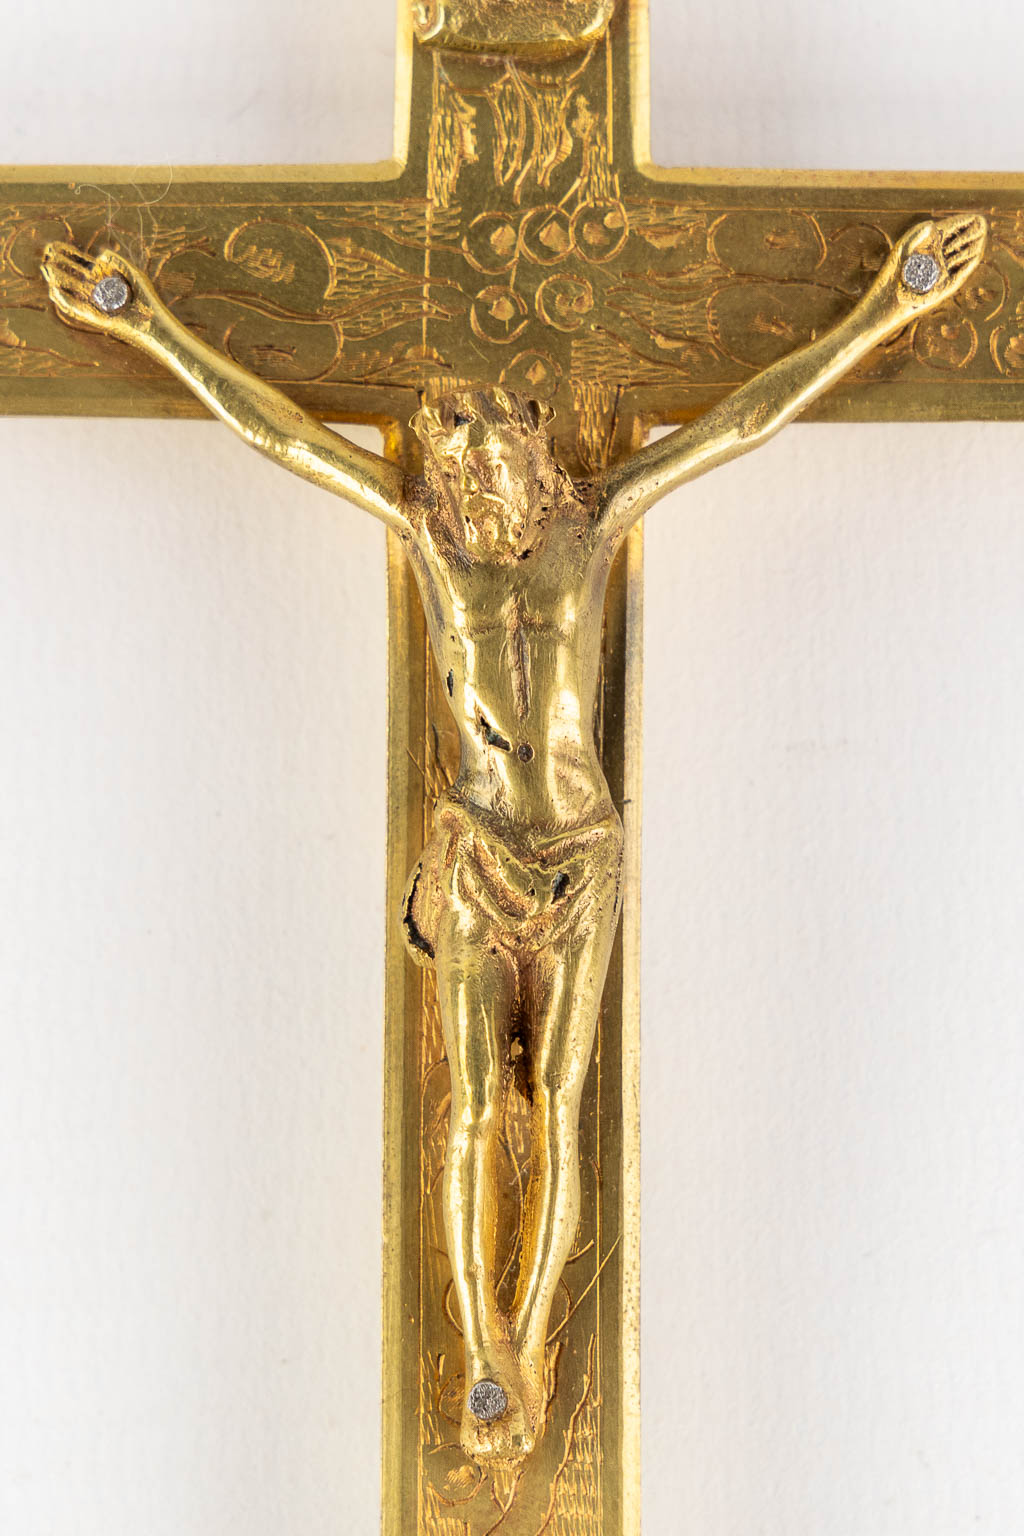 A reliquary crucifix with 5 relics and the original document, Domini Nostri Jesu Christi. (W:9 x H:15 cm)